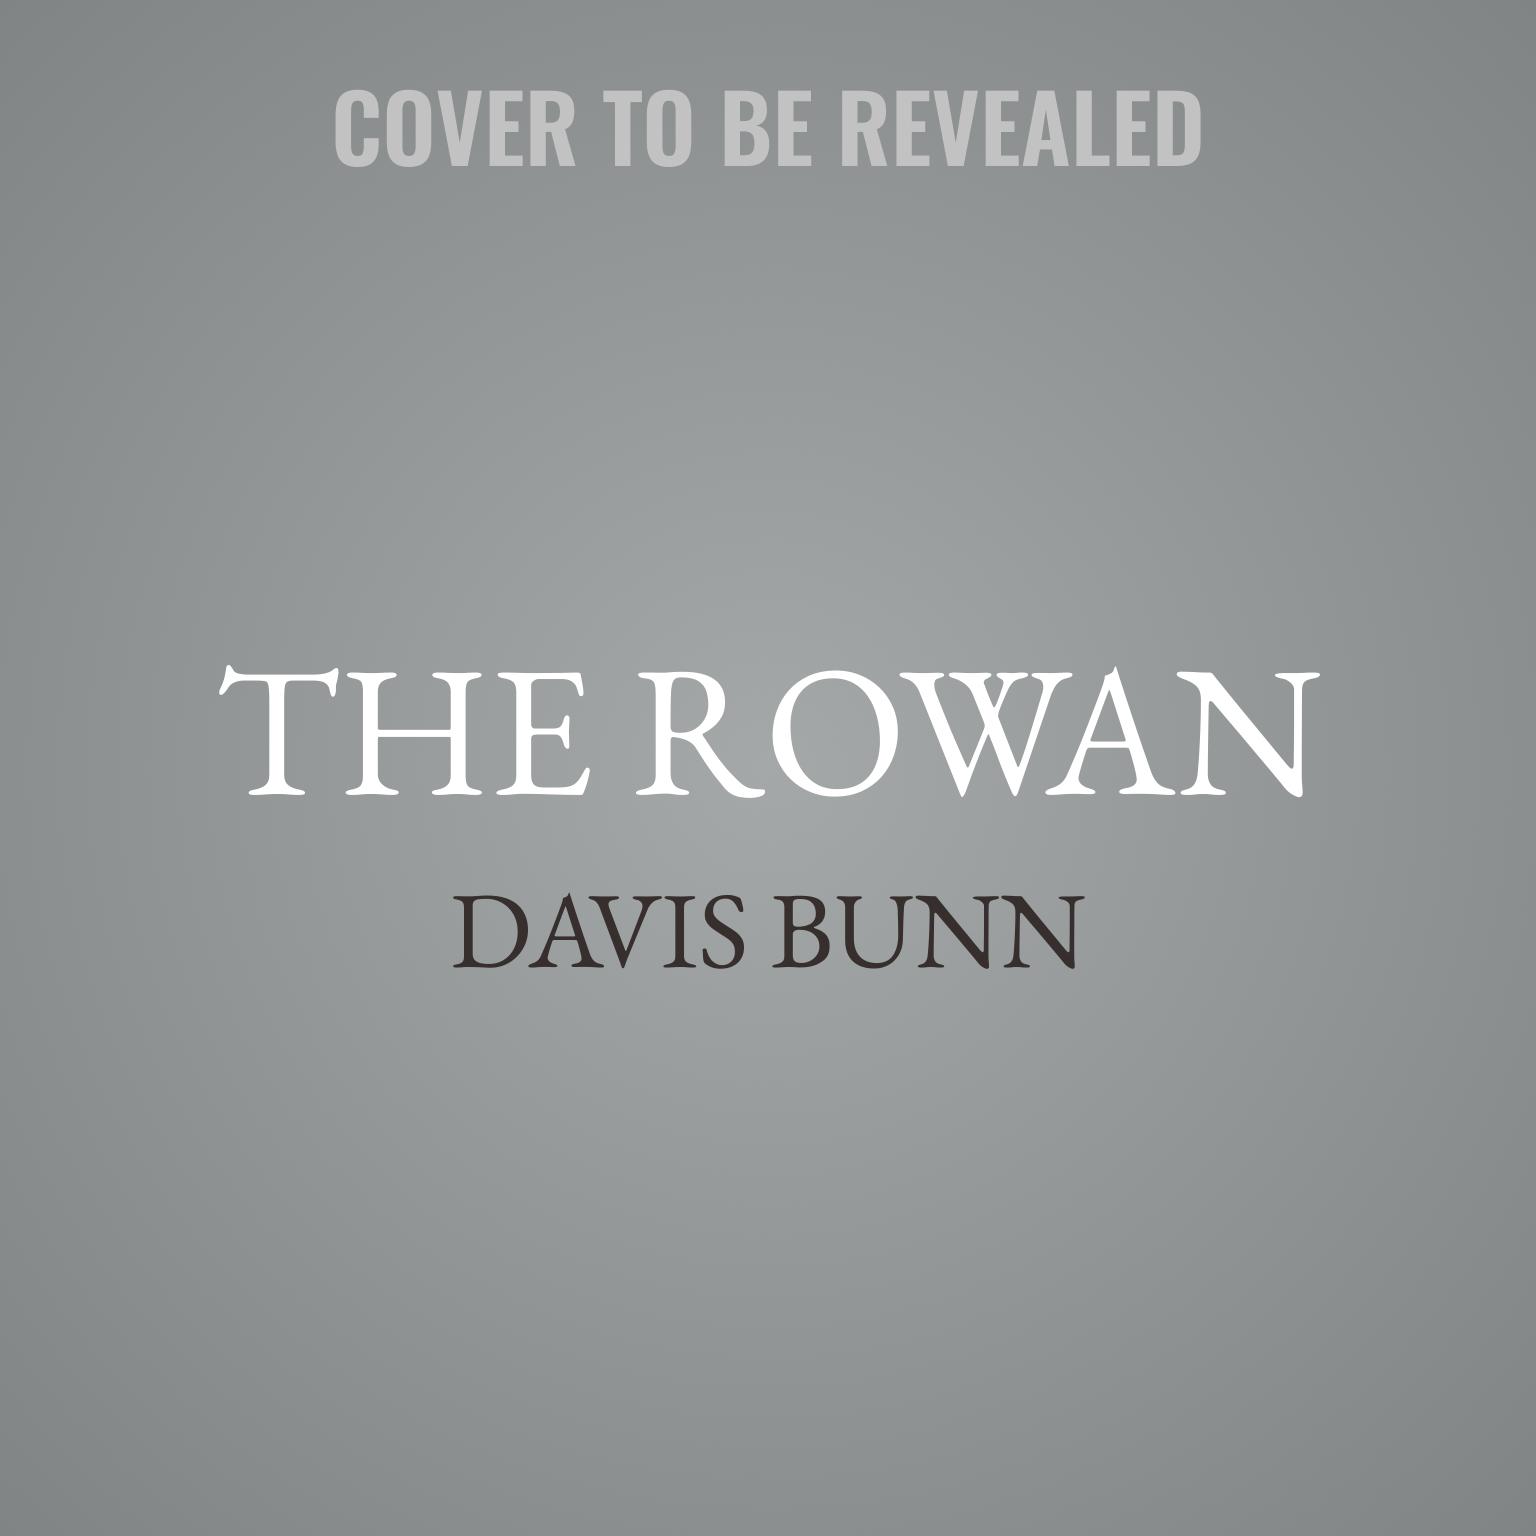 The Rowan: A Rowan Novel Audiobook, by T. Davis Bunn